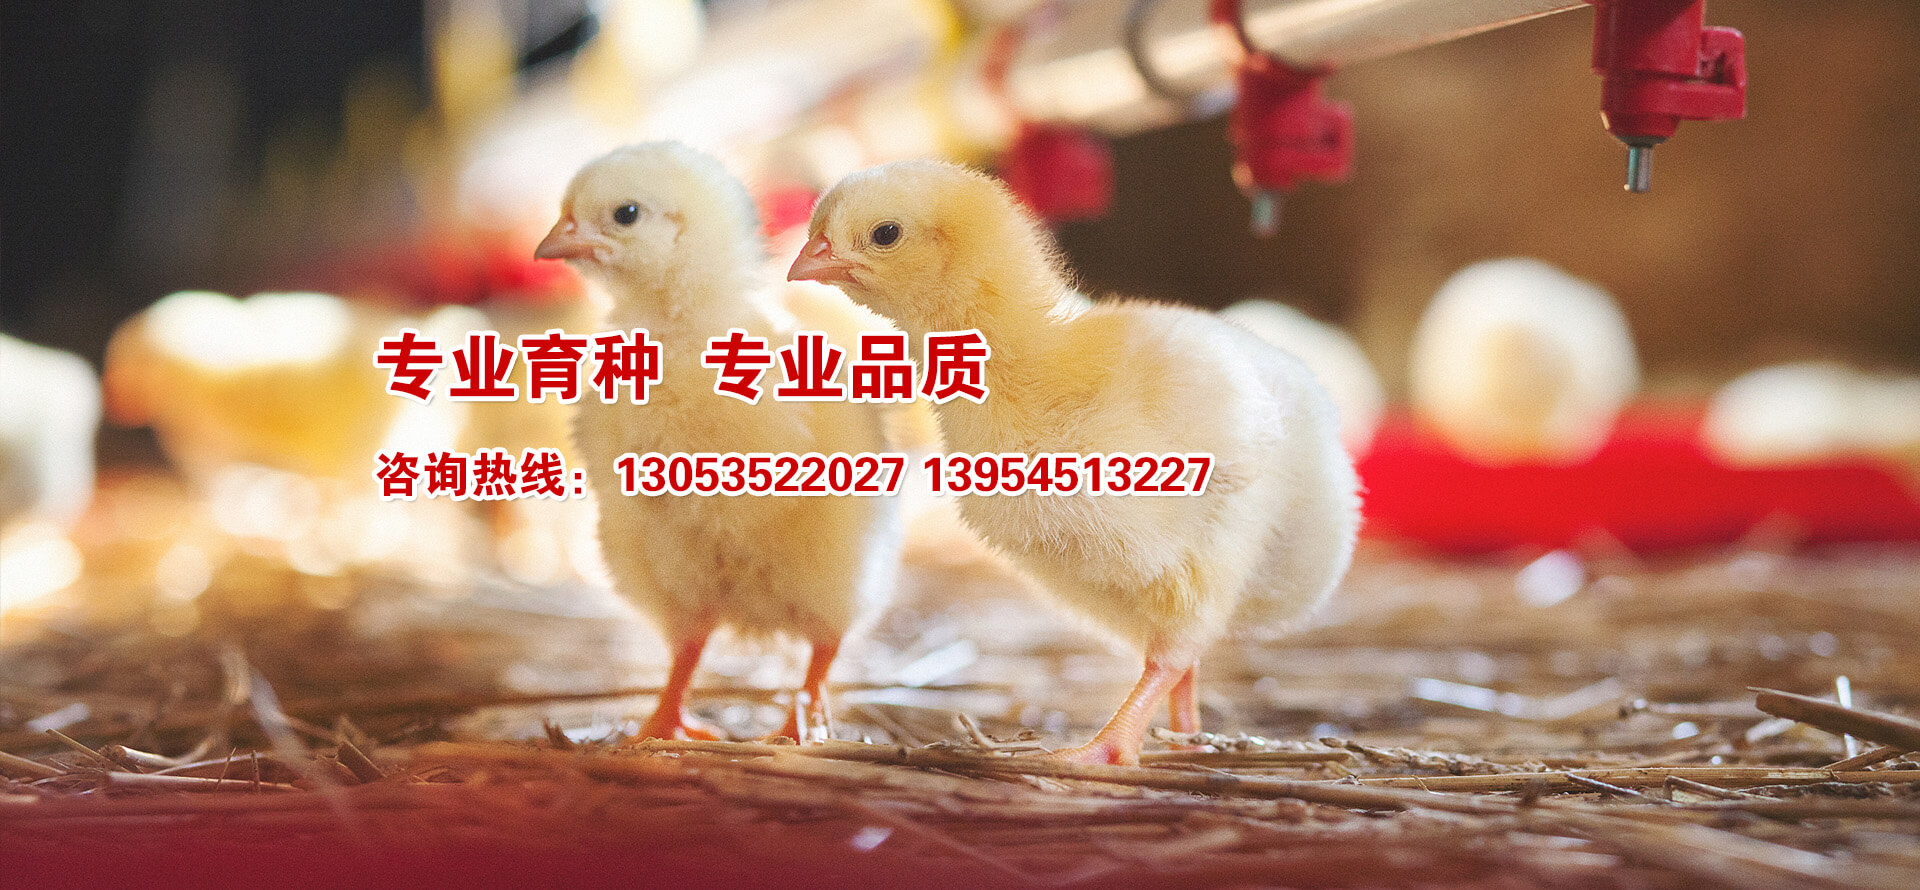 海陽鴻牧種雞有(yǒu)限公司